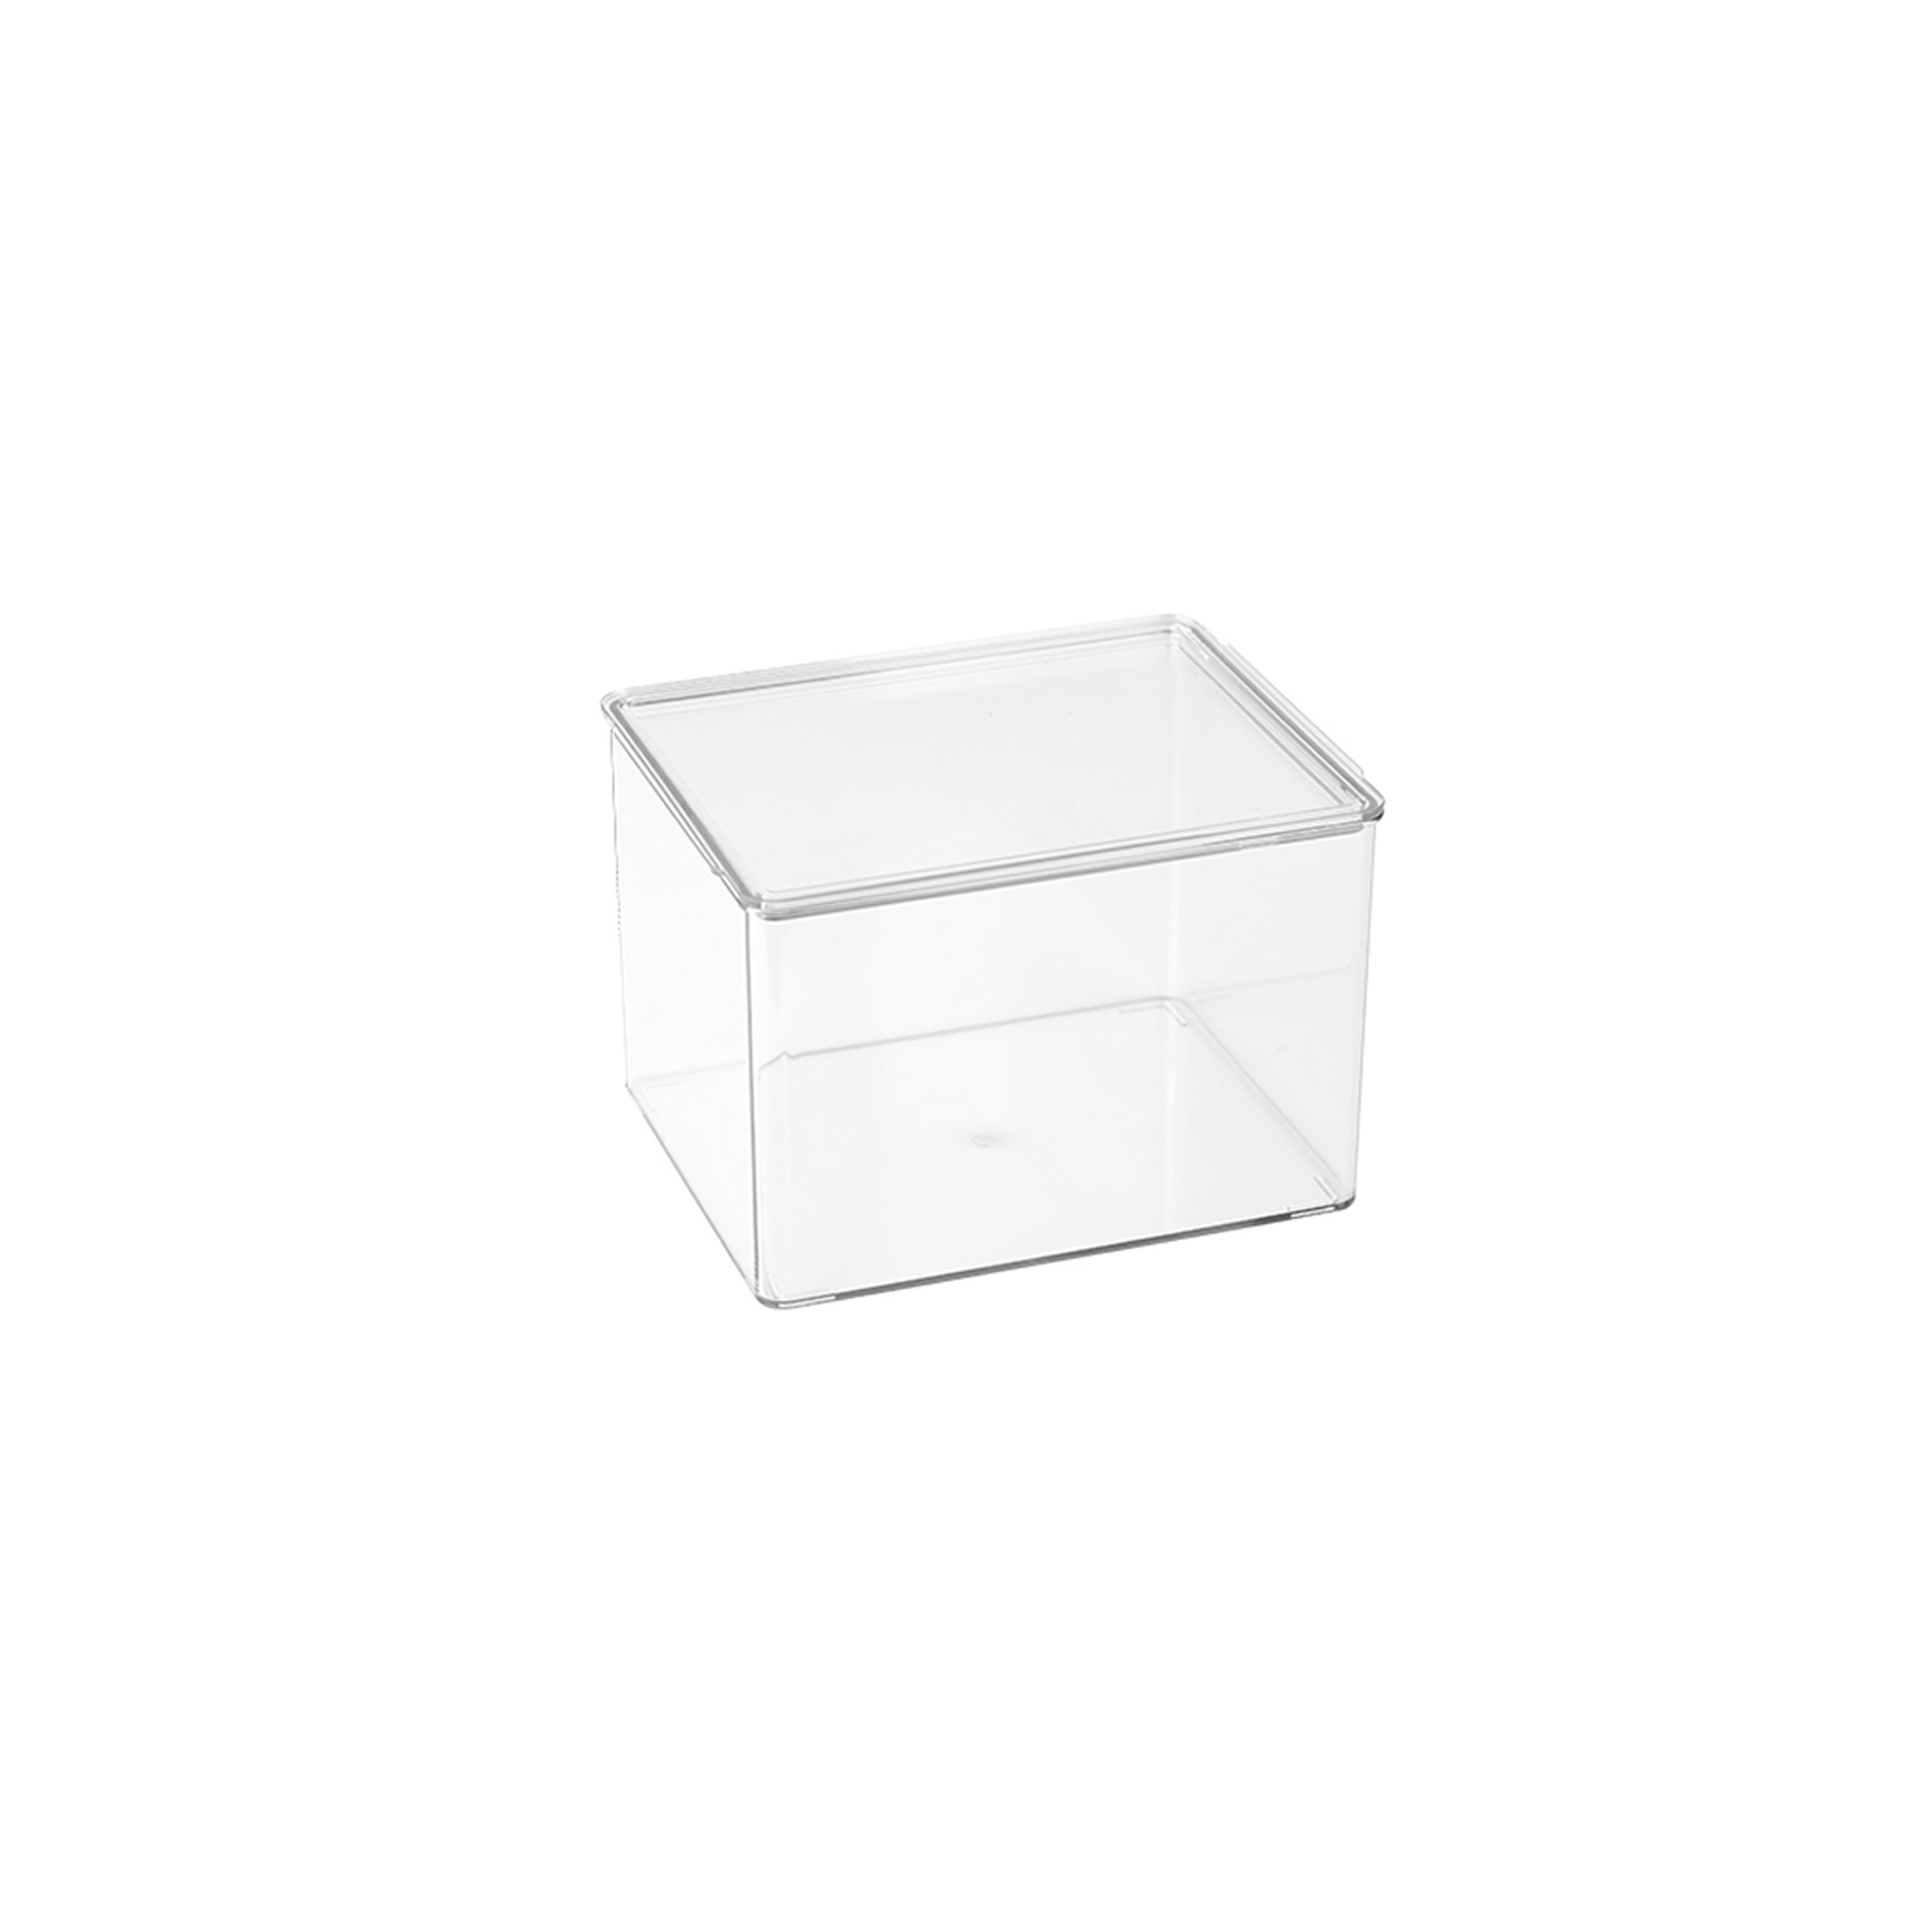 Mini Aufbewahrungsbox Storage Bin Container Kosmetik Box Pillendose Organizer 